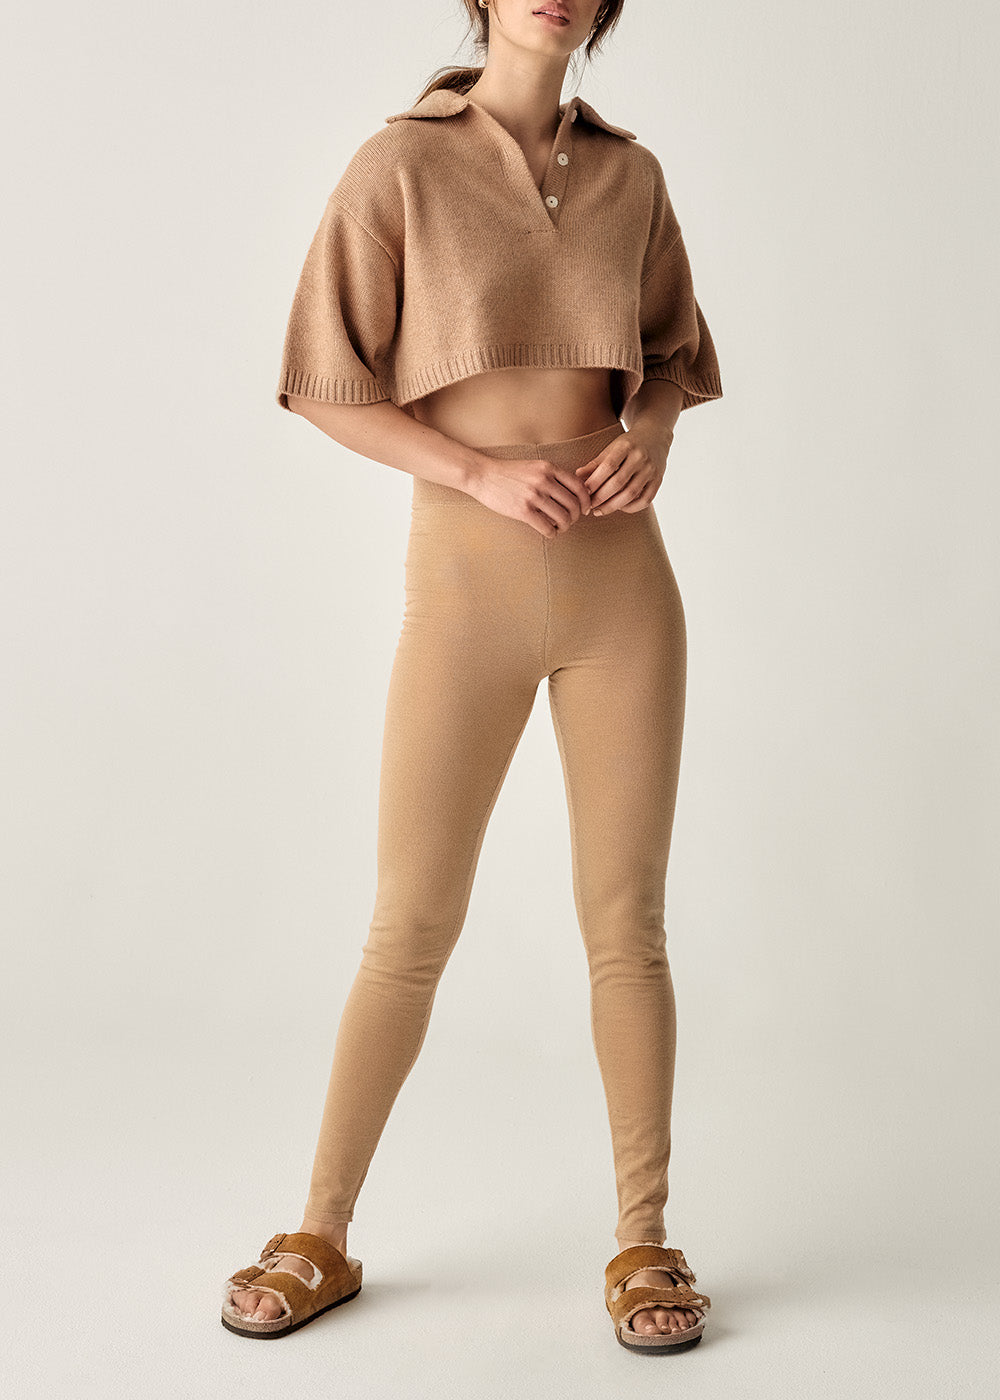 Tonya Cashmere Leggings - Large / Camel